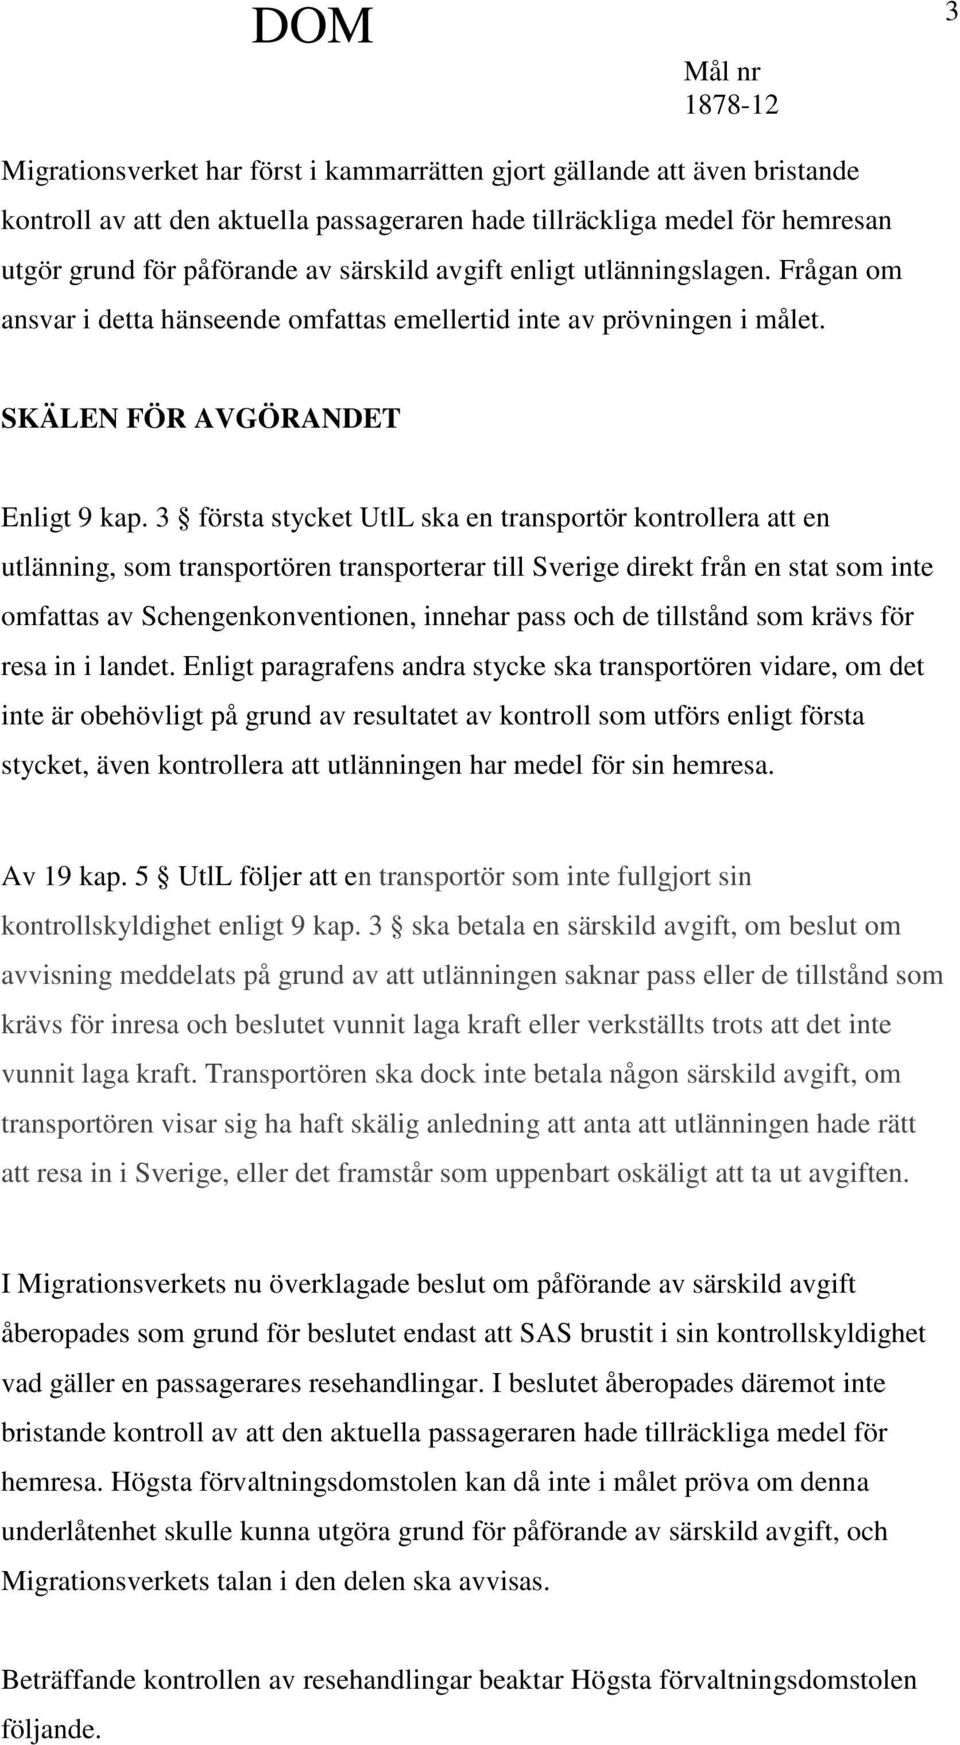 3 första stycket UtlL ska en transportör kontrollera att en utlänning, som transportören transporterar till Sverige direkt från en stat som inte omfattas av Schengenkonventionen, innehar pass och de